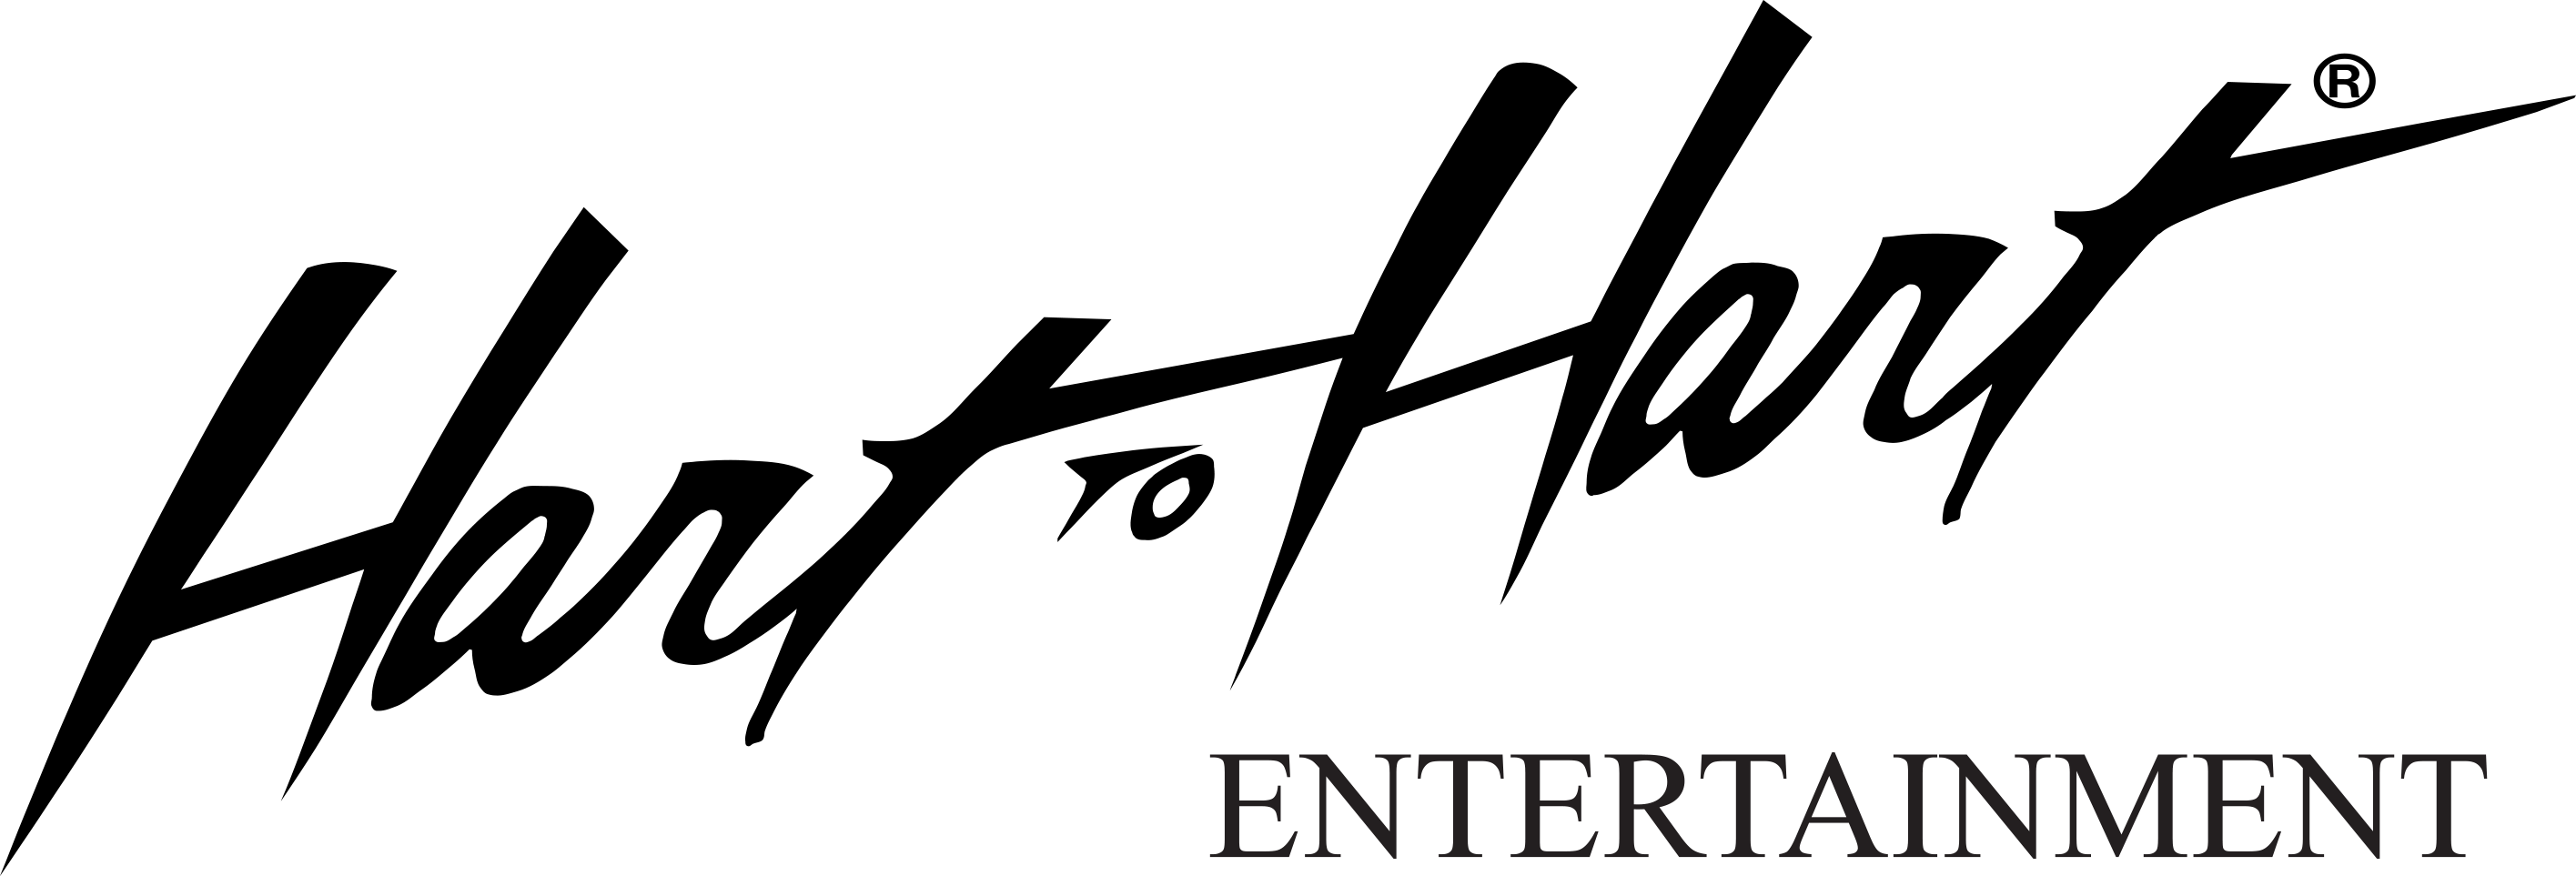 Hart Logo - Hart To Hart Logo - Hart to Hart